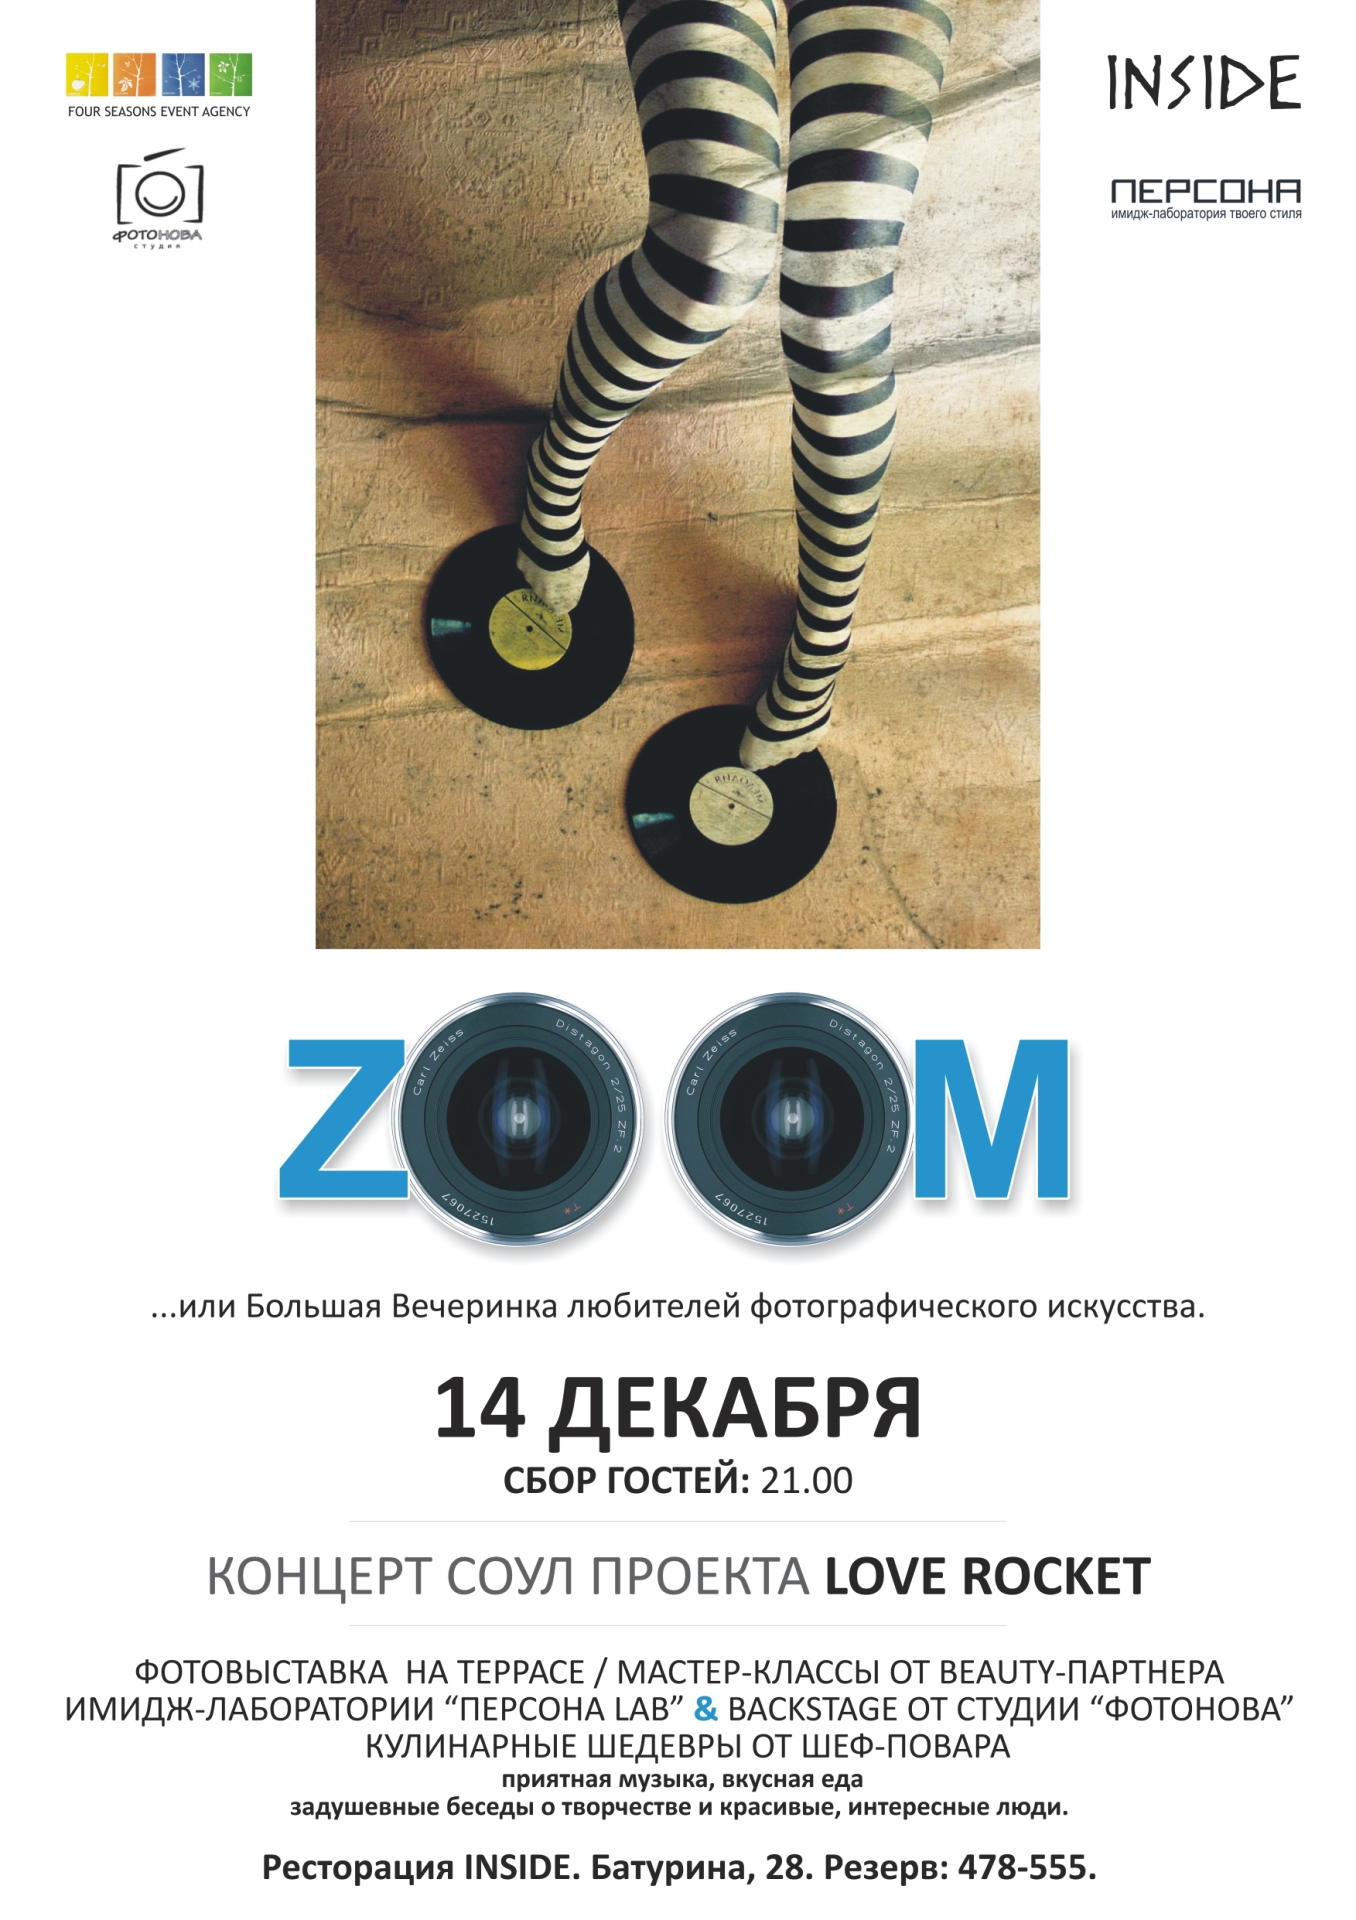 Большая вечеринка любителей фотографического искусства "ZOOM"